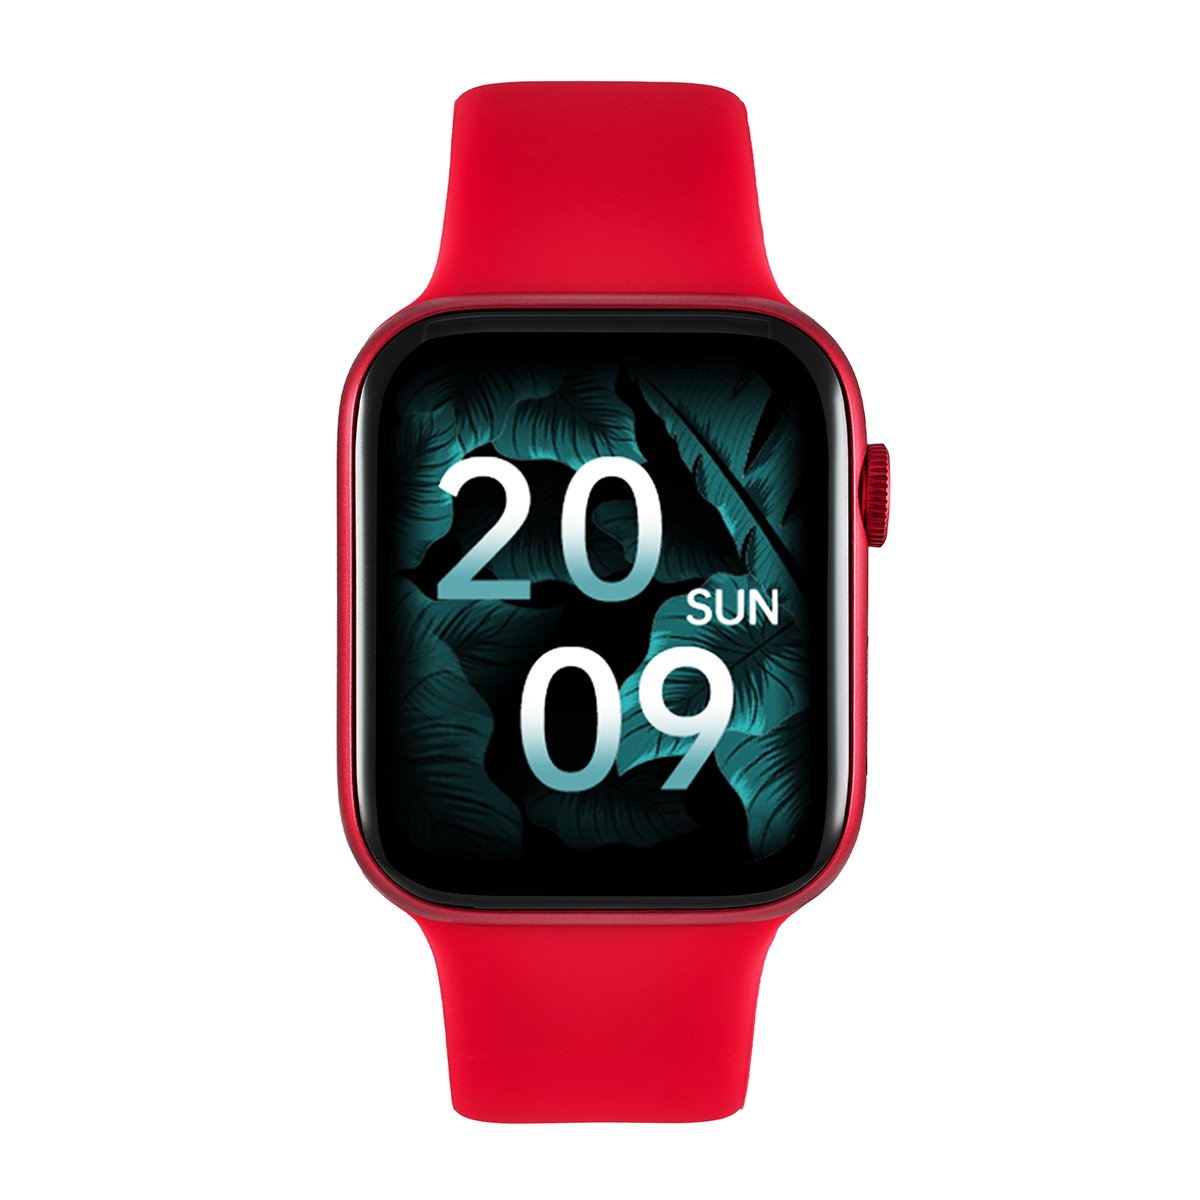 Zdjęcia - Smartwatche Watchmark Smartwatch , Zegarek Polarwatch, Asystent, Zdrowie, Sport, Muzyka 